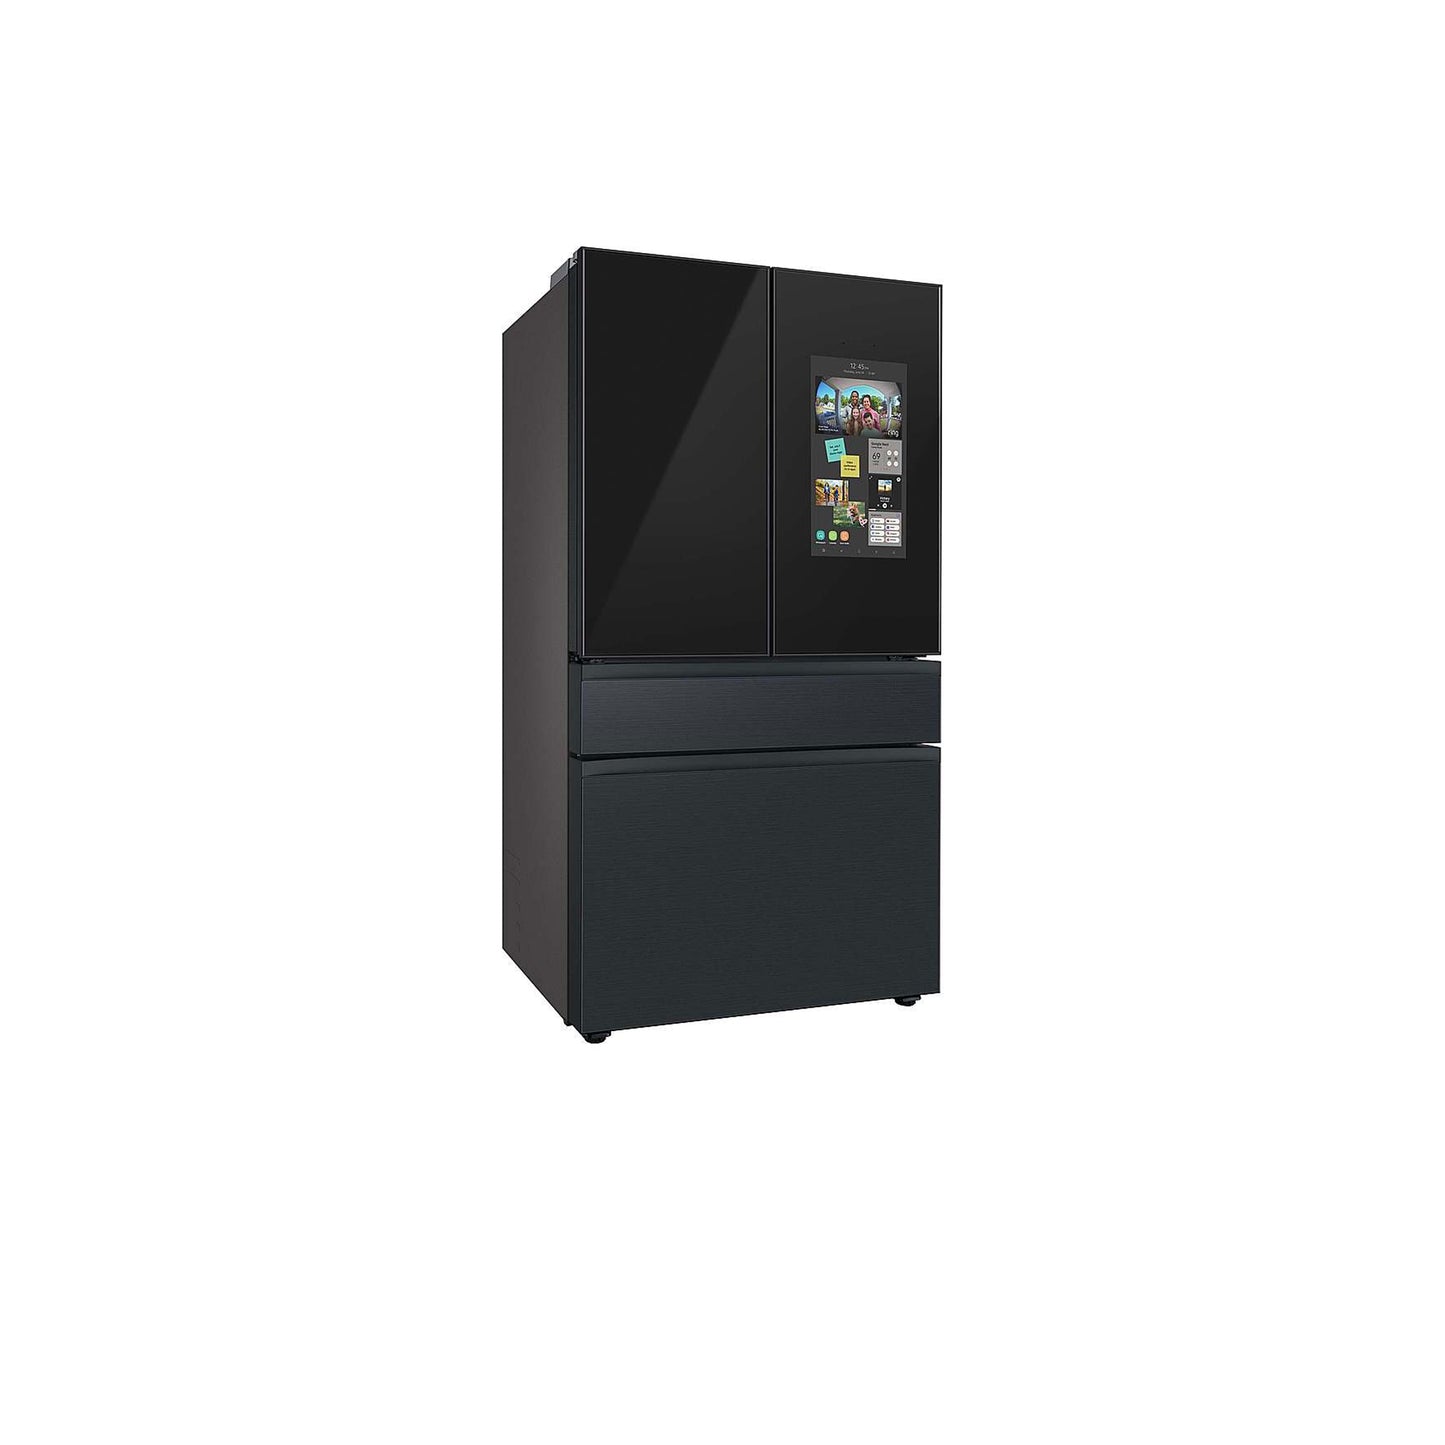 ثلاجة مخصصة بباب فرنسي بأربعة أبواب (23 قدمًا مكعبًا) - مع لوحة علوية يسارية وFamily Hub™ مصنوعة من الزجاج الفحمي - وألواح وسطى وسفلية من الفولاذ باللون الأسود غير اللامع. 